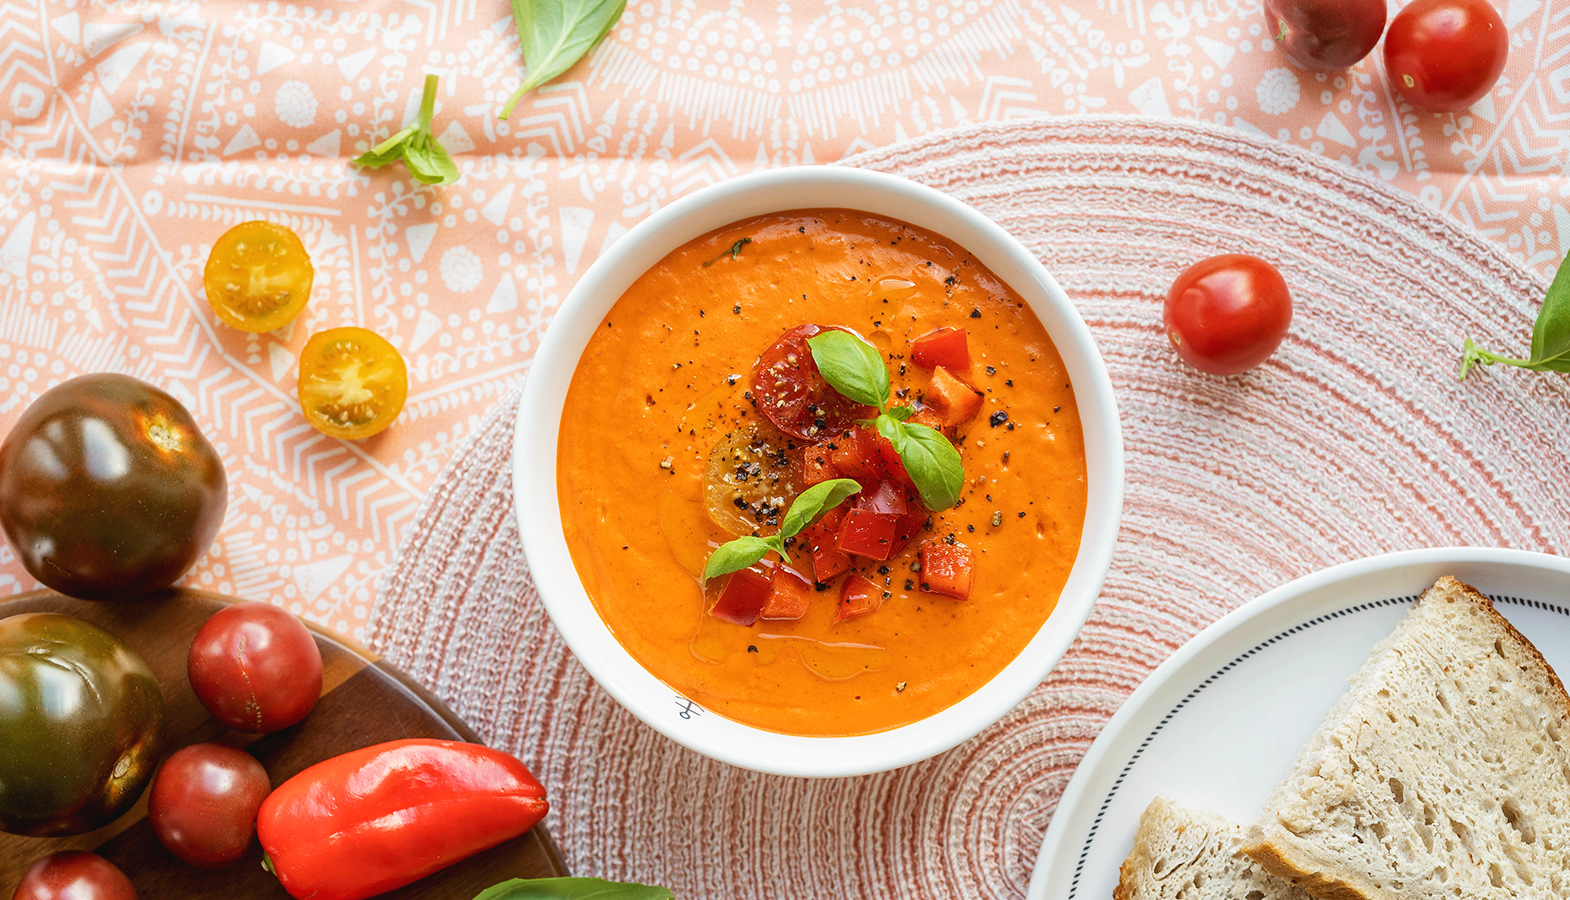 سوپ های سرد یکی از محبوب ترین سوپ های تابستانی